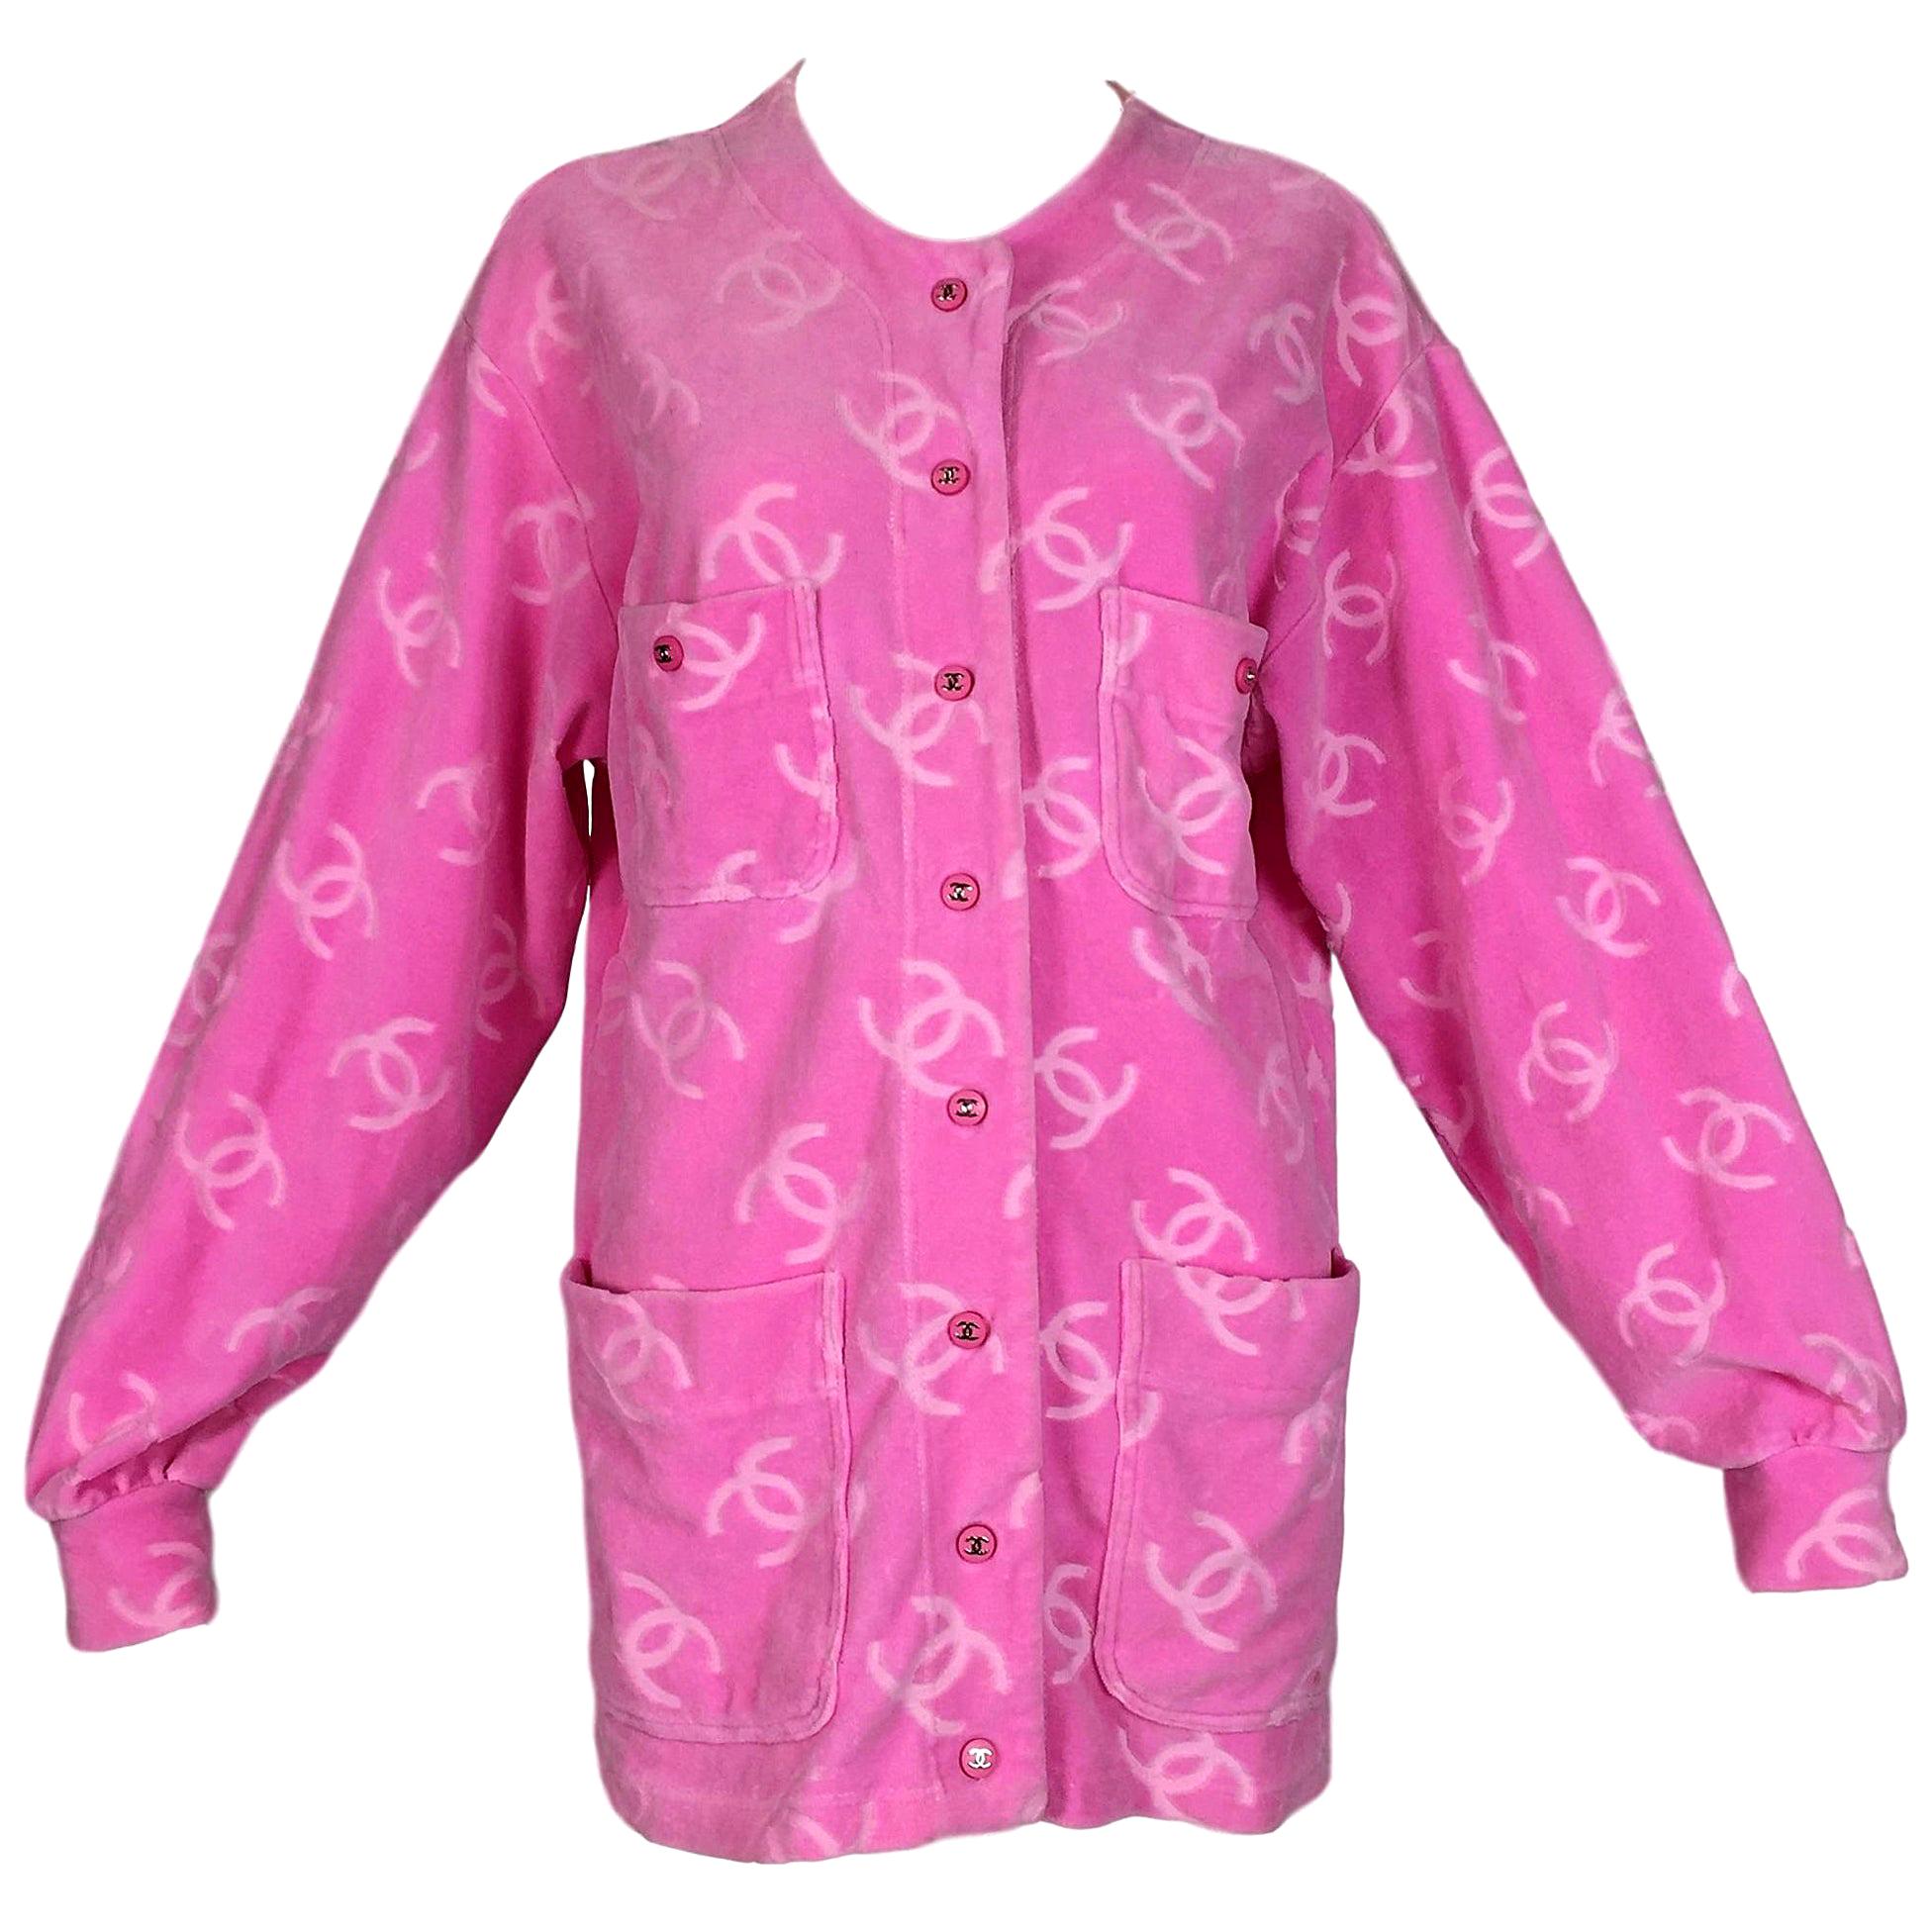 S/S 1996 Chanel Runway Pink Velvet Logo Monogram Jacket Dress